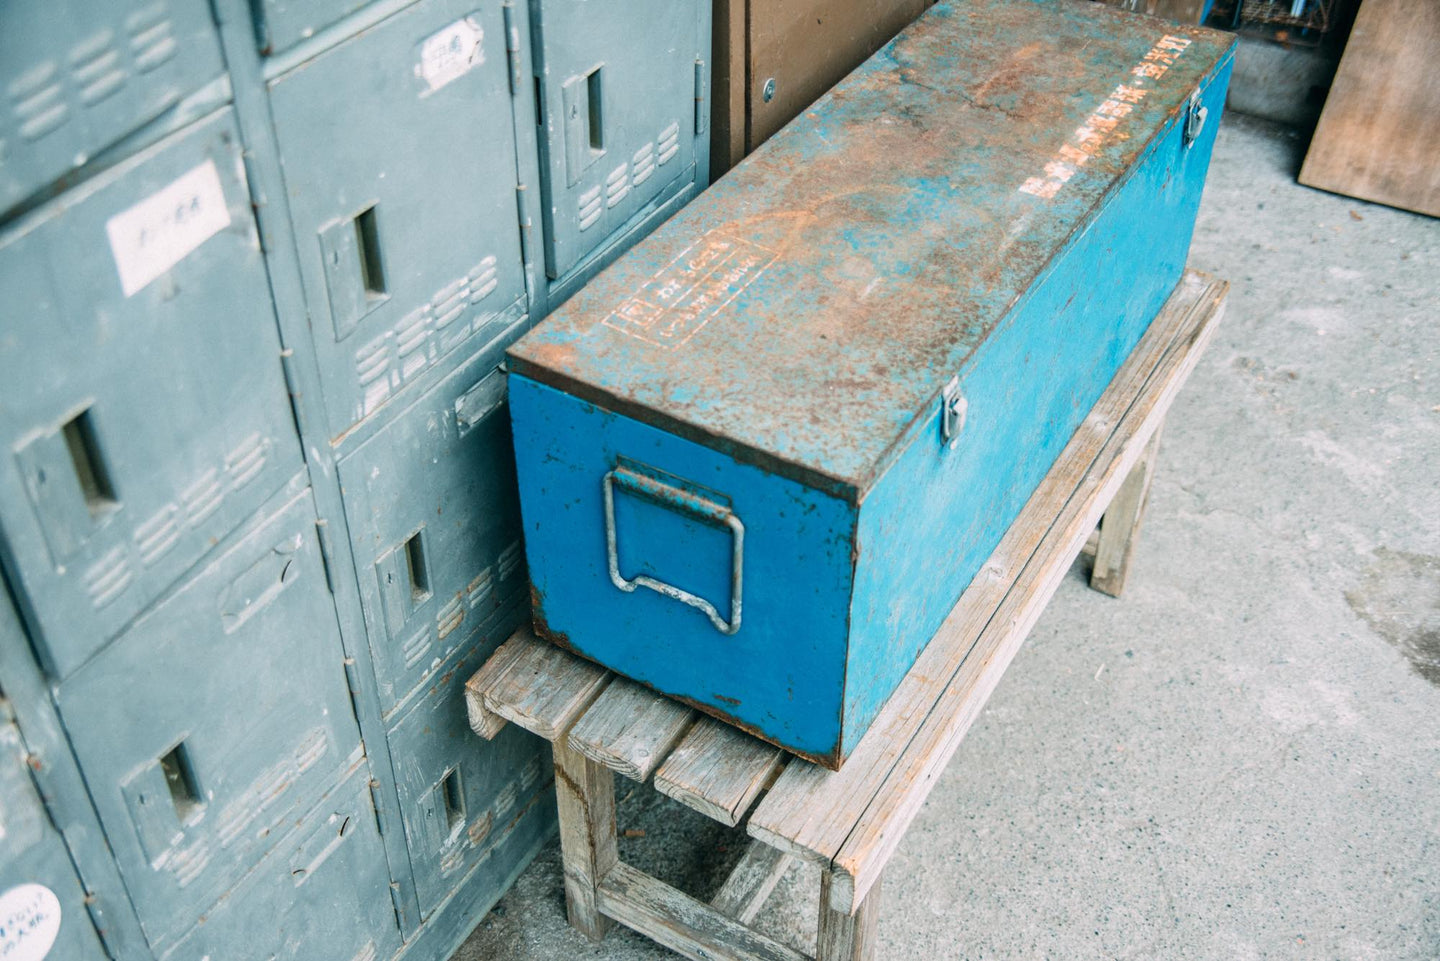 ナショナルの青がかっけーお仕事の道具箱だった鉄の箱